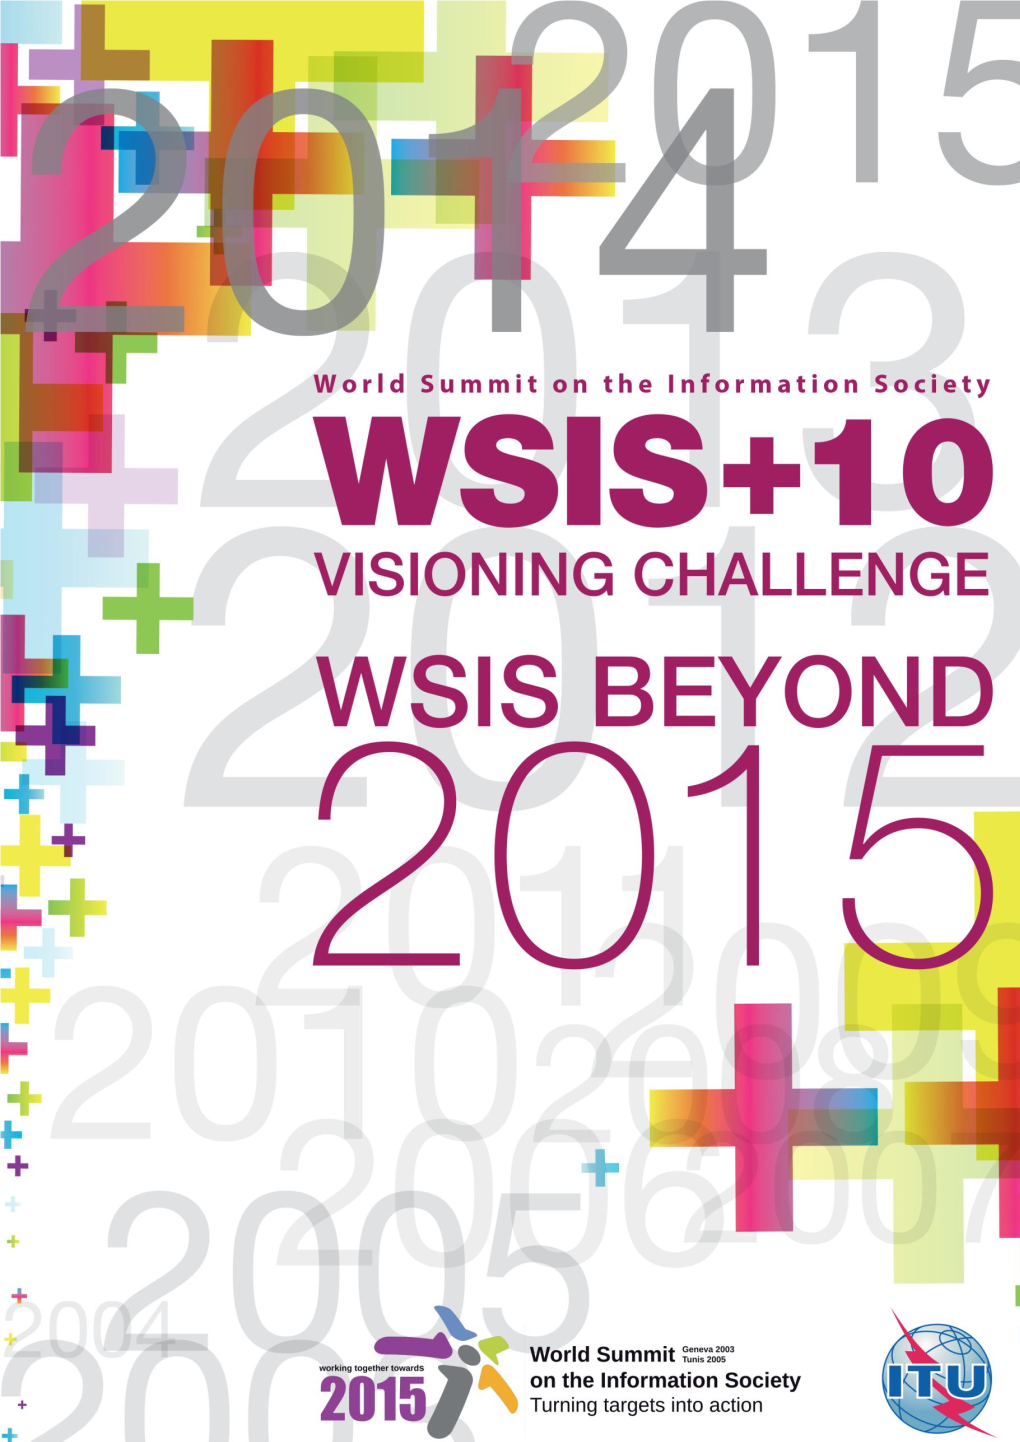 (2013) WSIS+10 Visioning Challenge: WSIS Beyond 2015